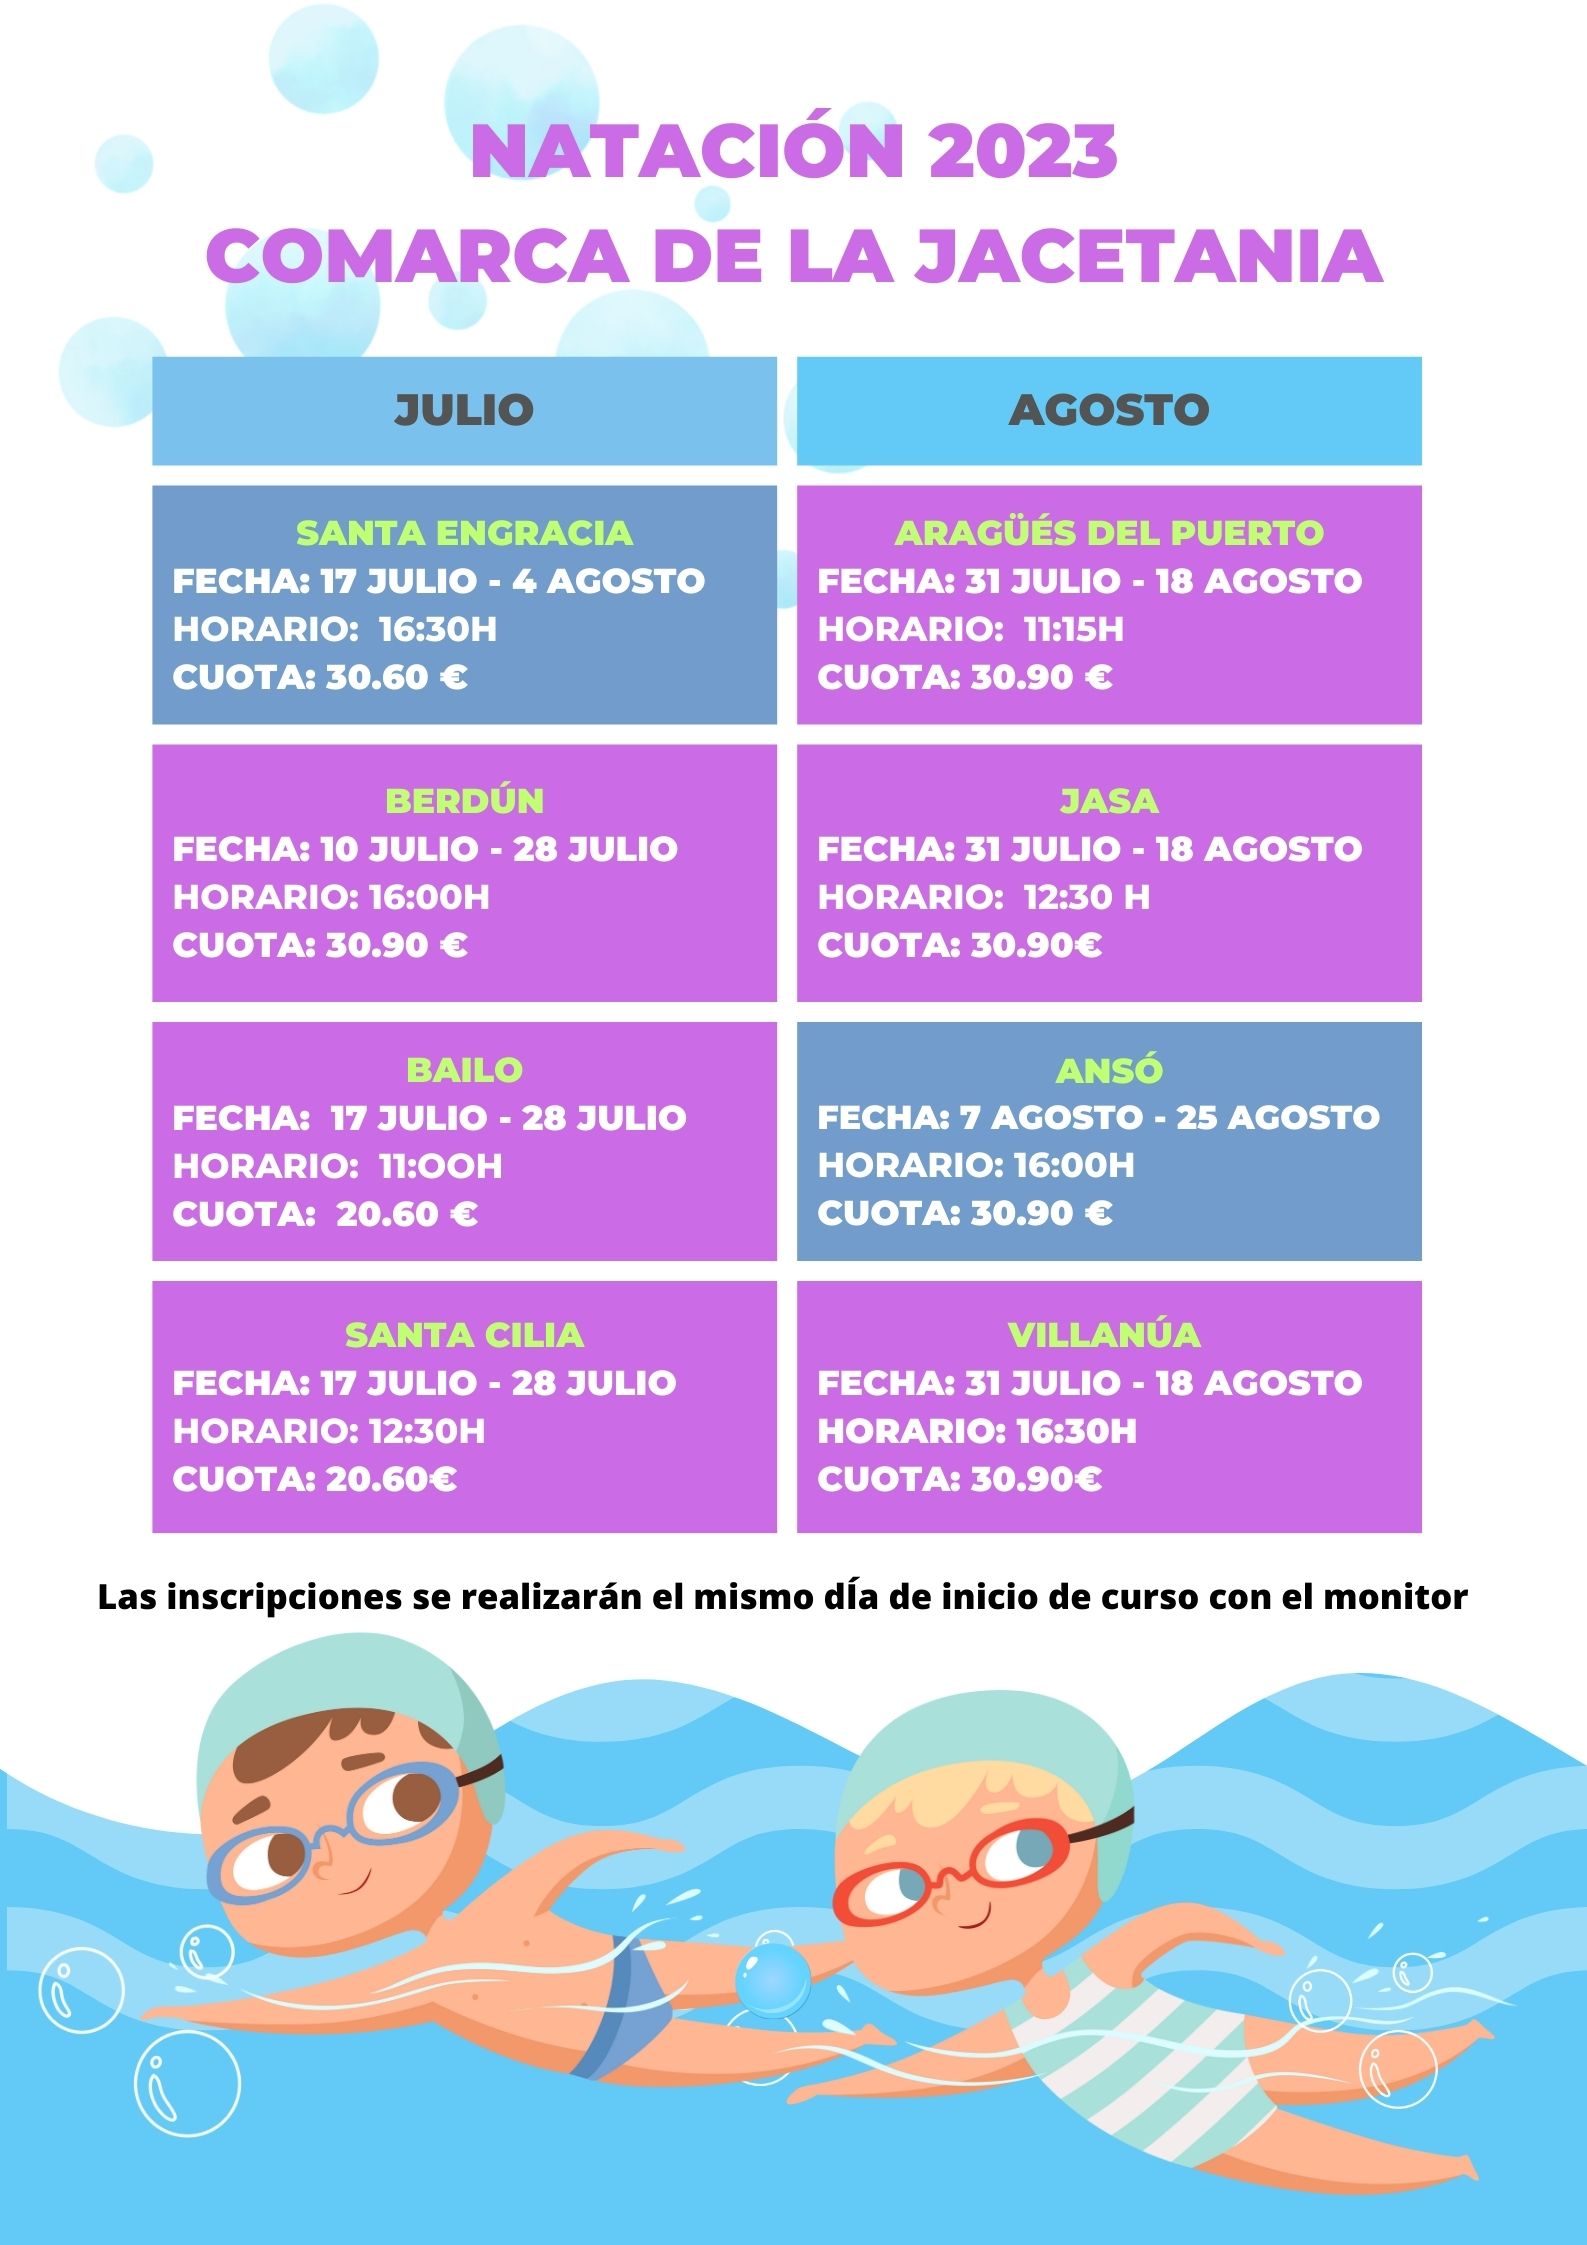 La Comarca de la Jacetania organiza cursillos de natación en 8 localidades